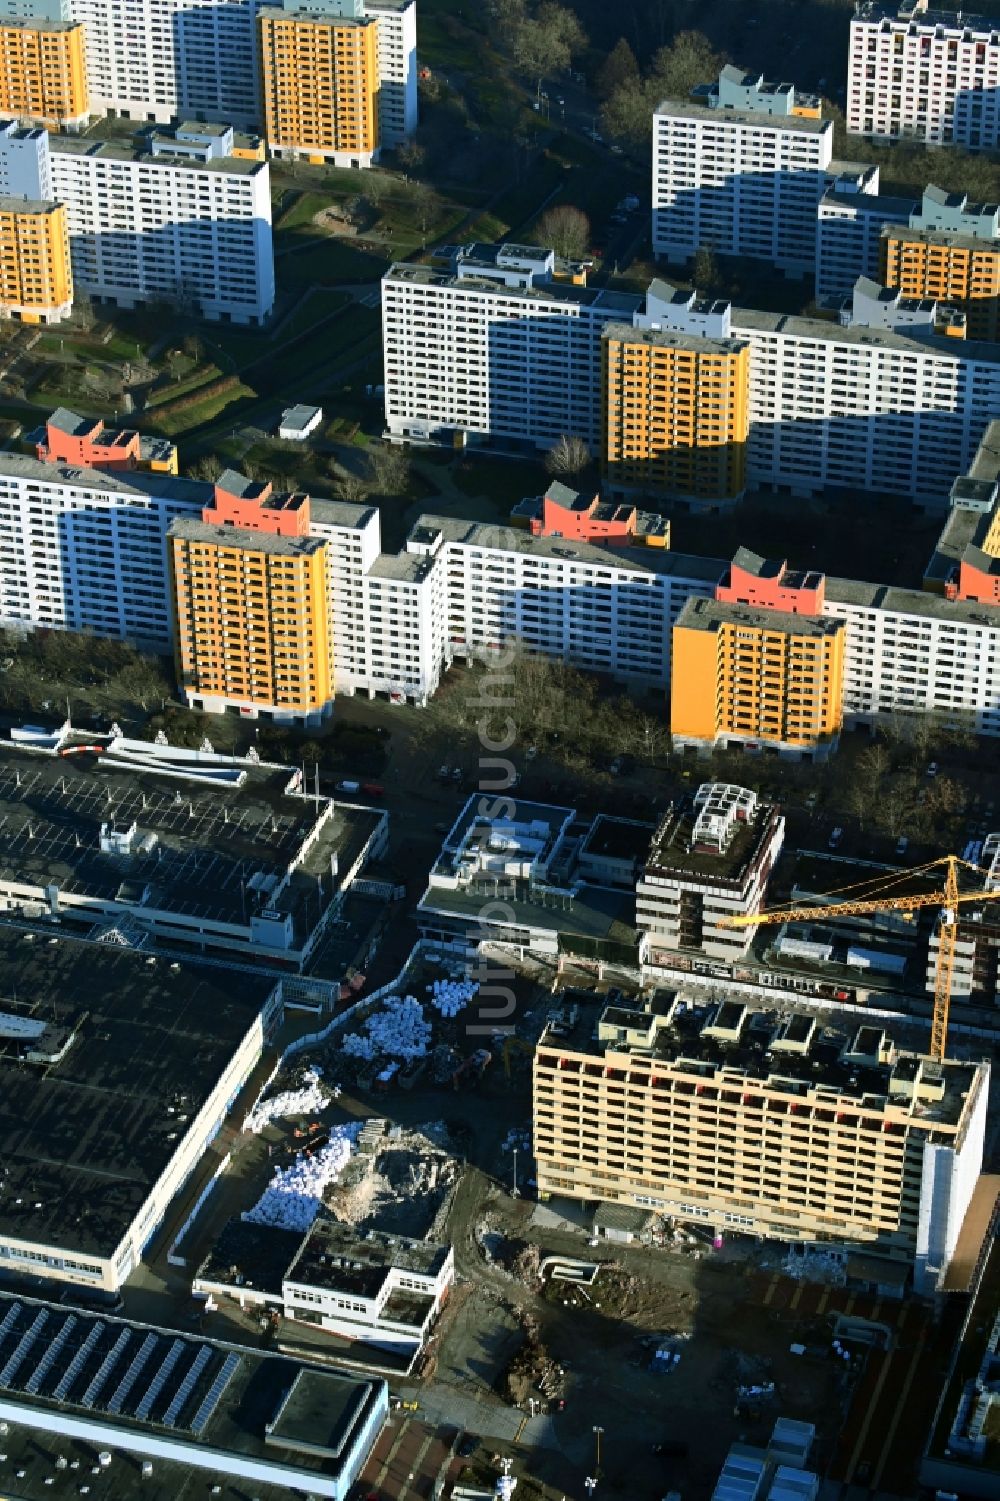 Berlin von oben - Revitalisierung und Erweiterungs- Baustelle am Gebäudekomplex des Einkaufszentrum Märkische Zentrum im Ortsteil Märkisches Viertel in Berlin, Deutschland